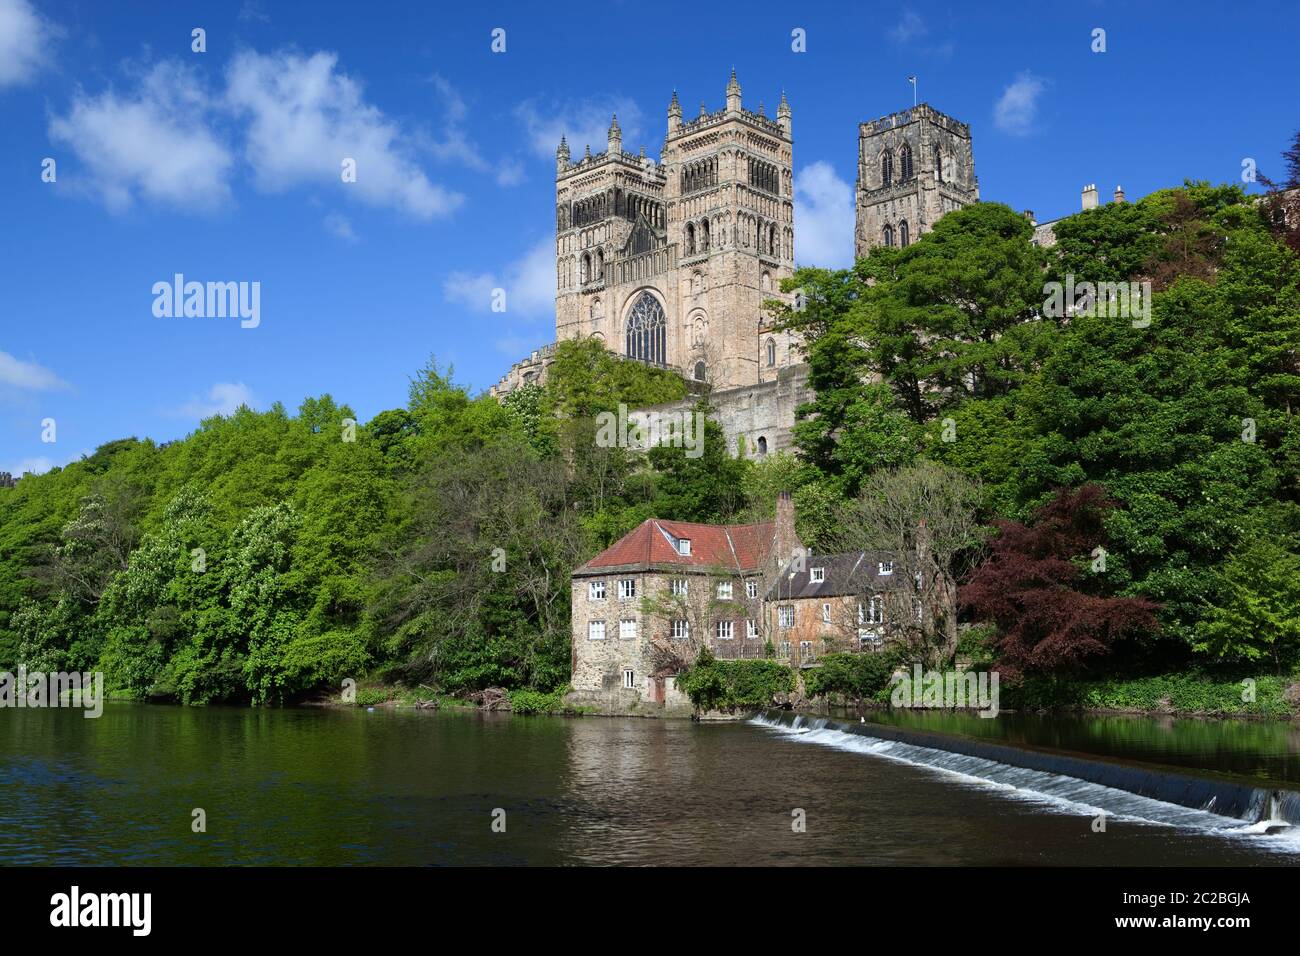 La Catedral de Durham y el antiguo molino de Fulling y el Museo de arqueología sobre el río Wear, Durham, condado de Durham, Inglaterra, Reino Unido, Europa Foto de stock